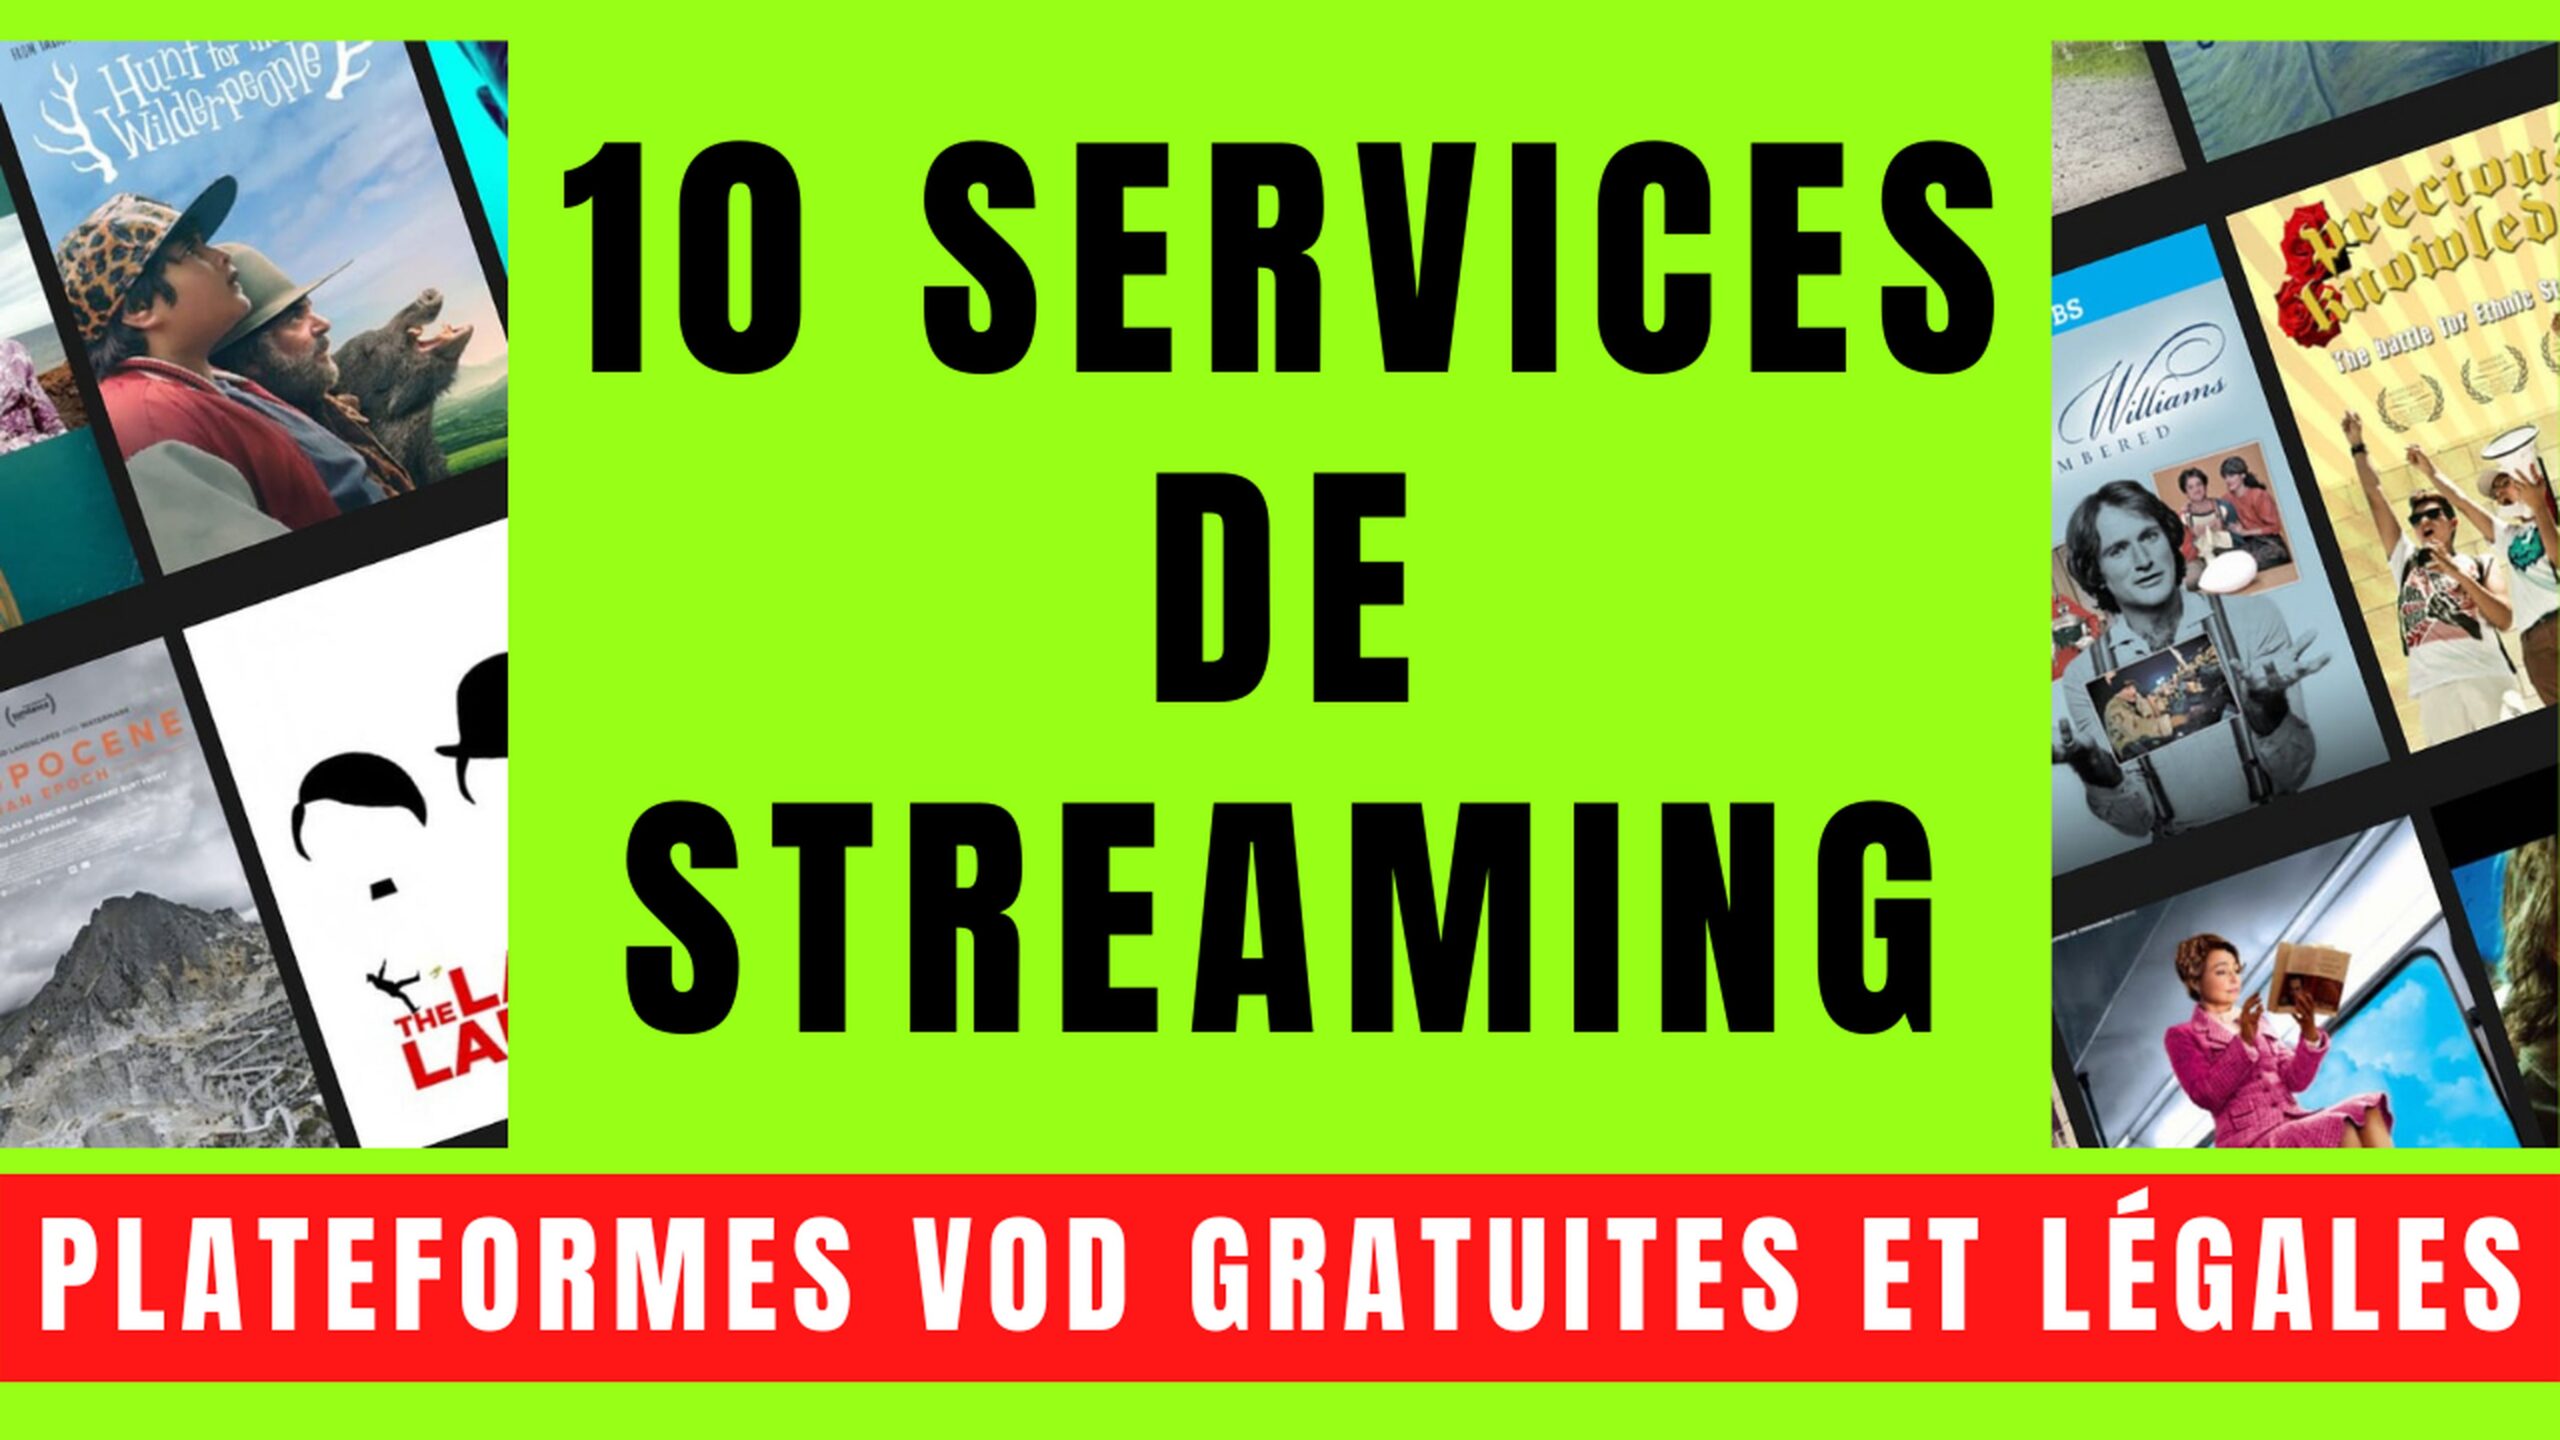 10 SERVICES VOD avec STREAMING GRATUIT et LÉGAL 14